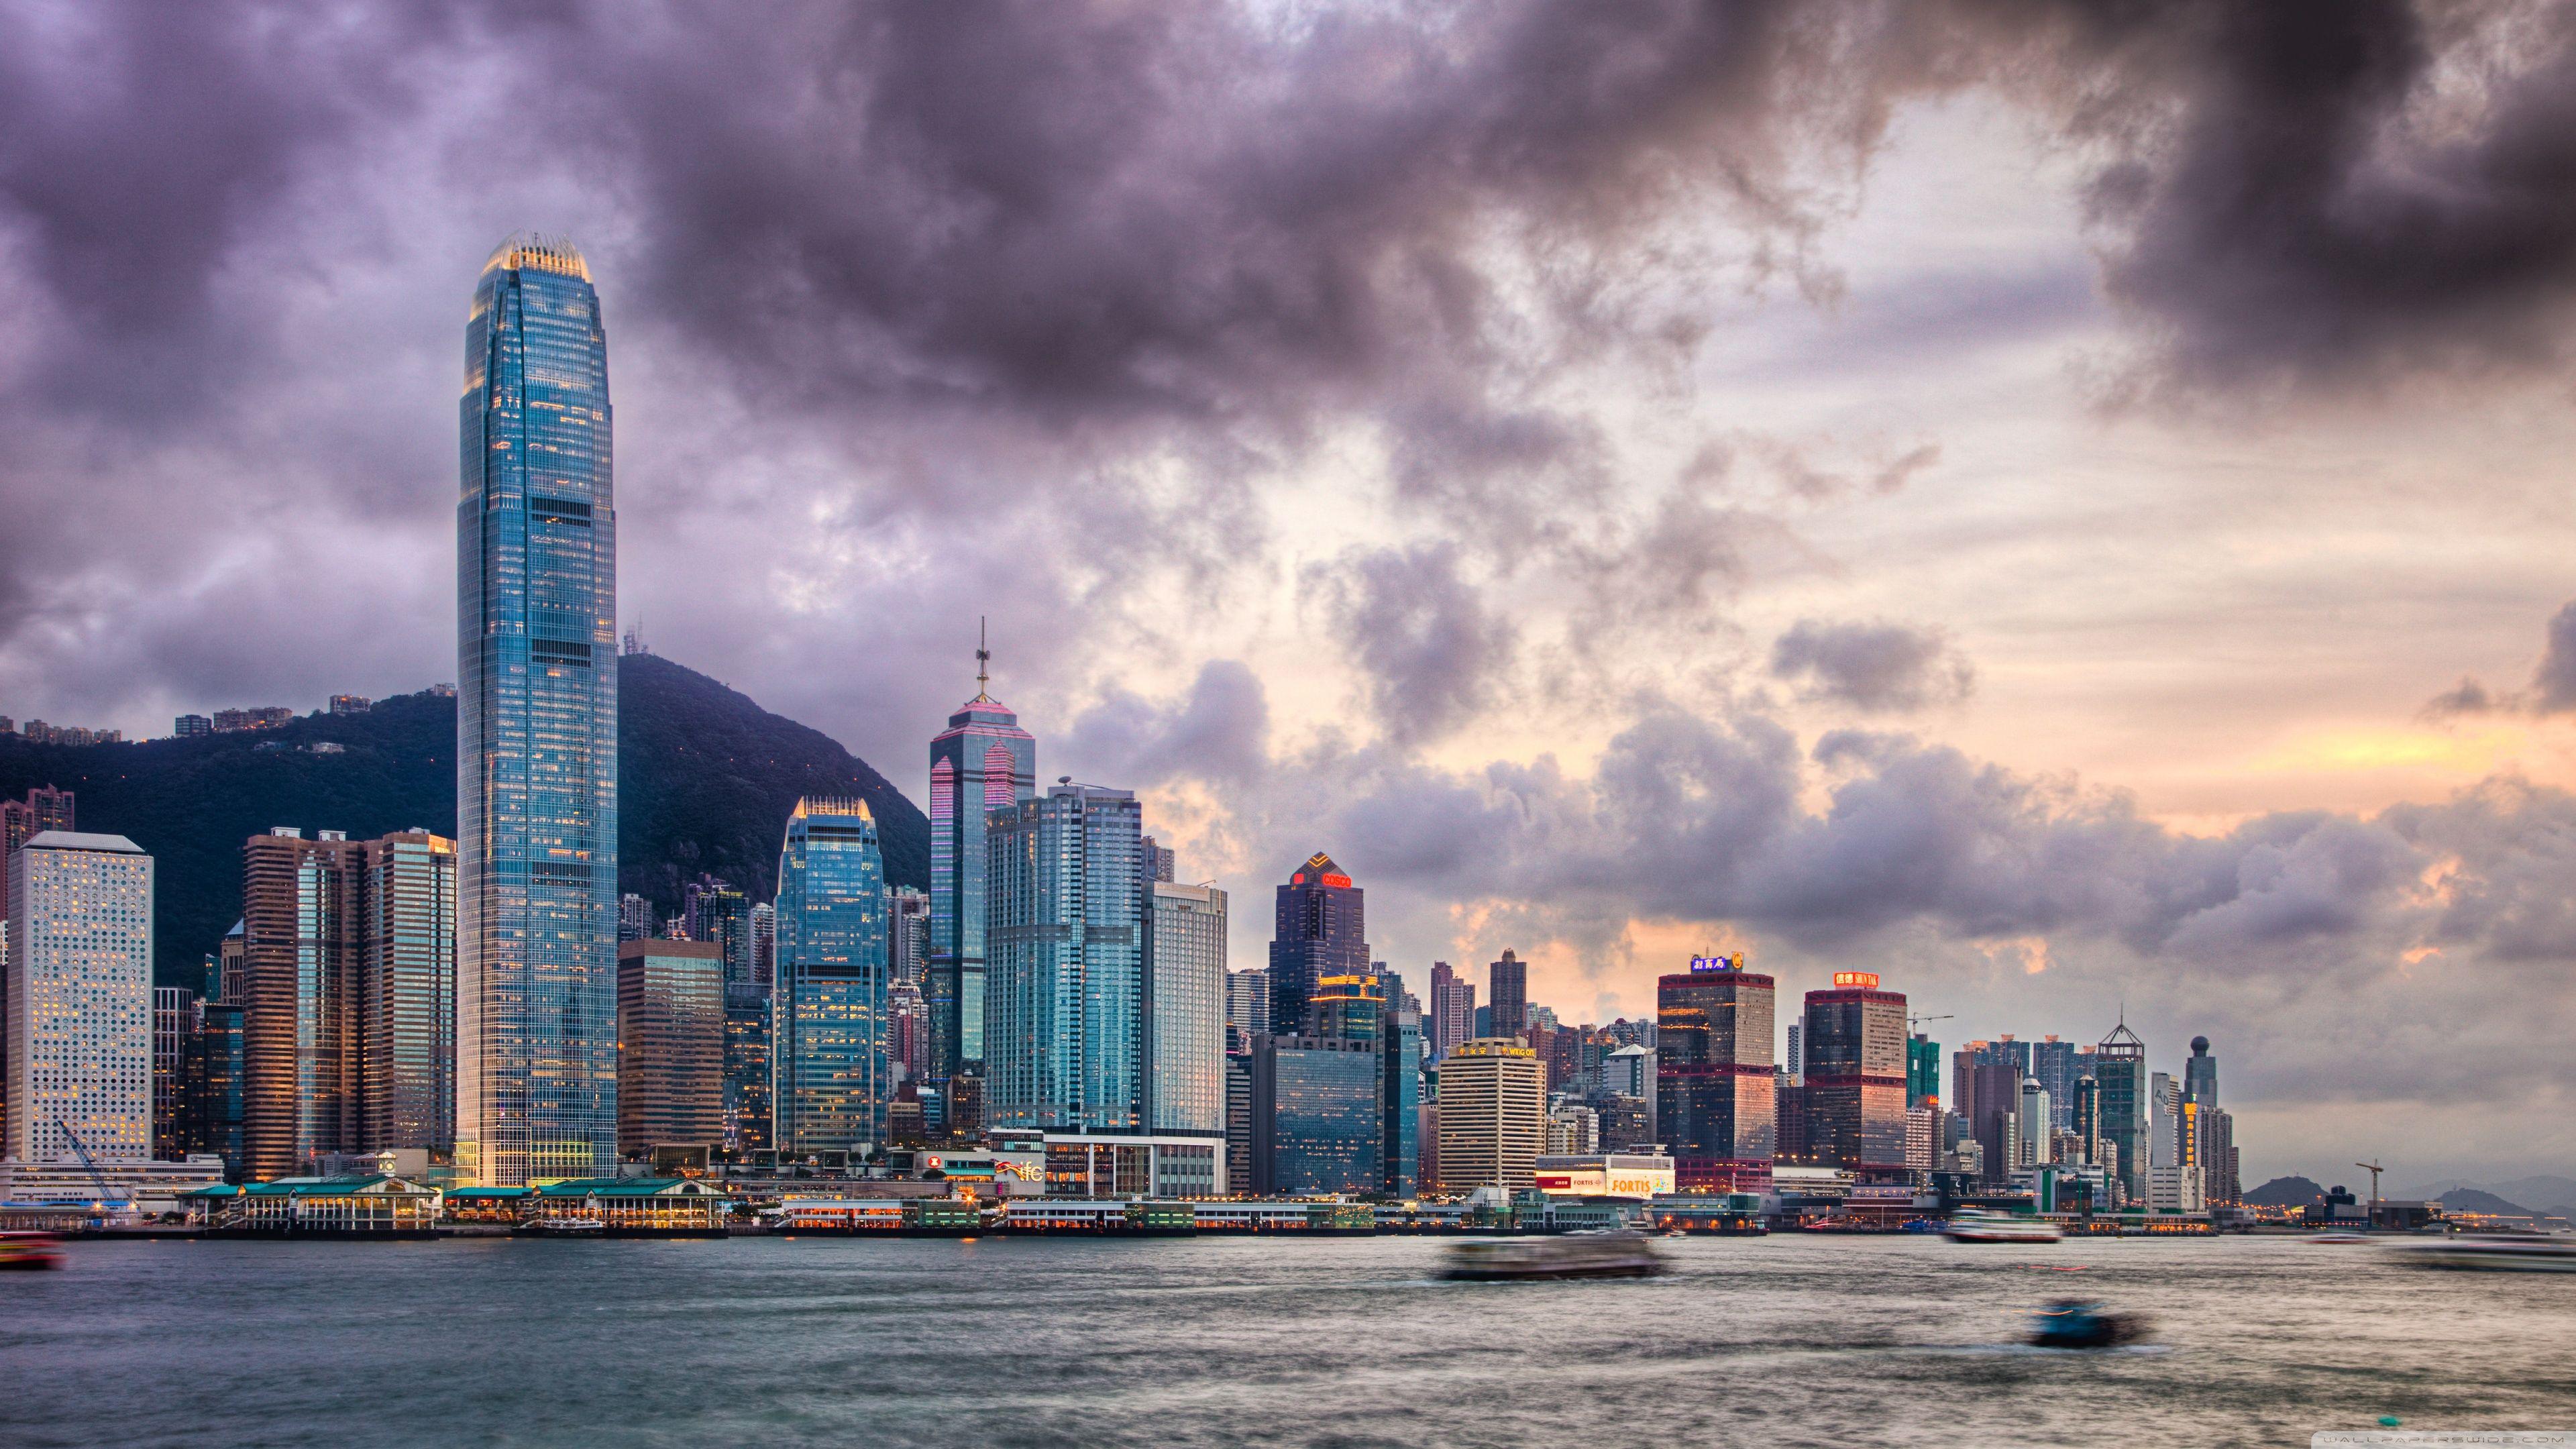 Hong Kong: Hong Kong - thành phố sôi động và phồn hoa với những địa danh nổi tiếng trên thế giới. Hình ảnh này sẽ đưa bạn đến với những khu phố đông đúc và những tòa nhà cao tầng lung linh ánh đèn.